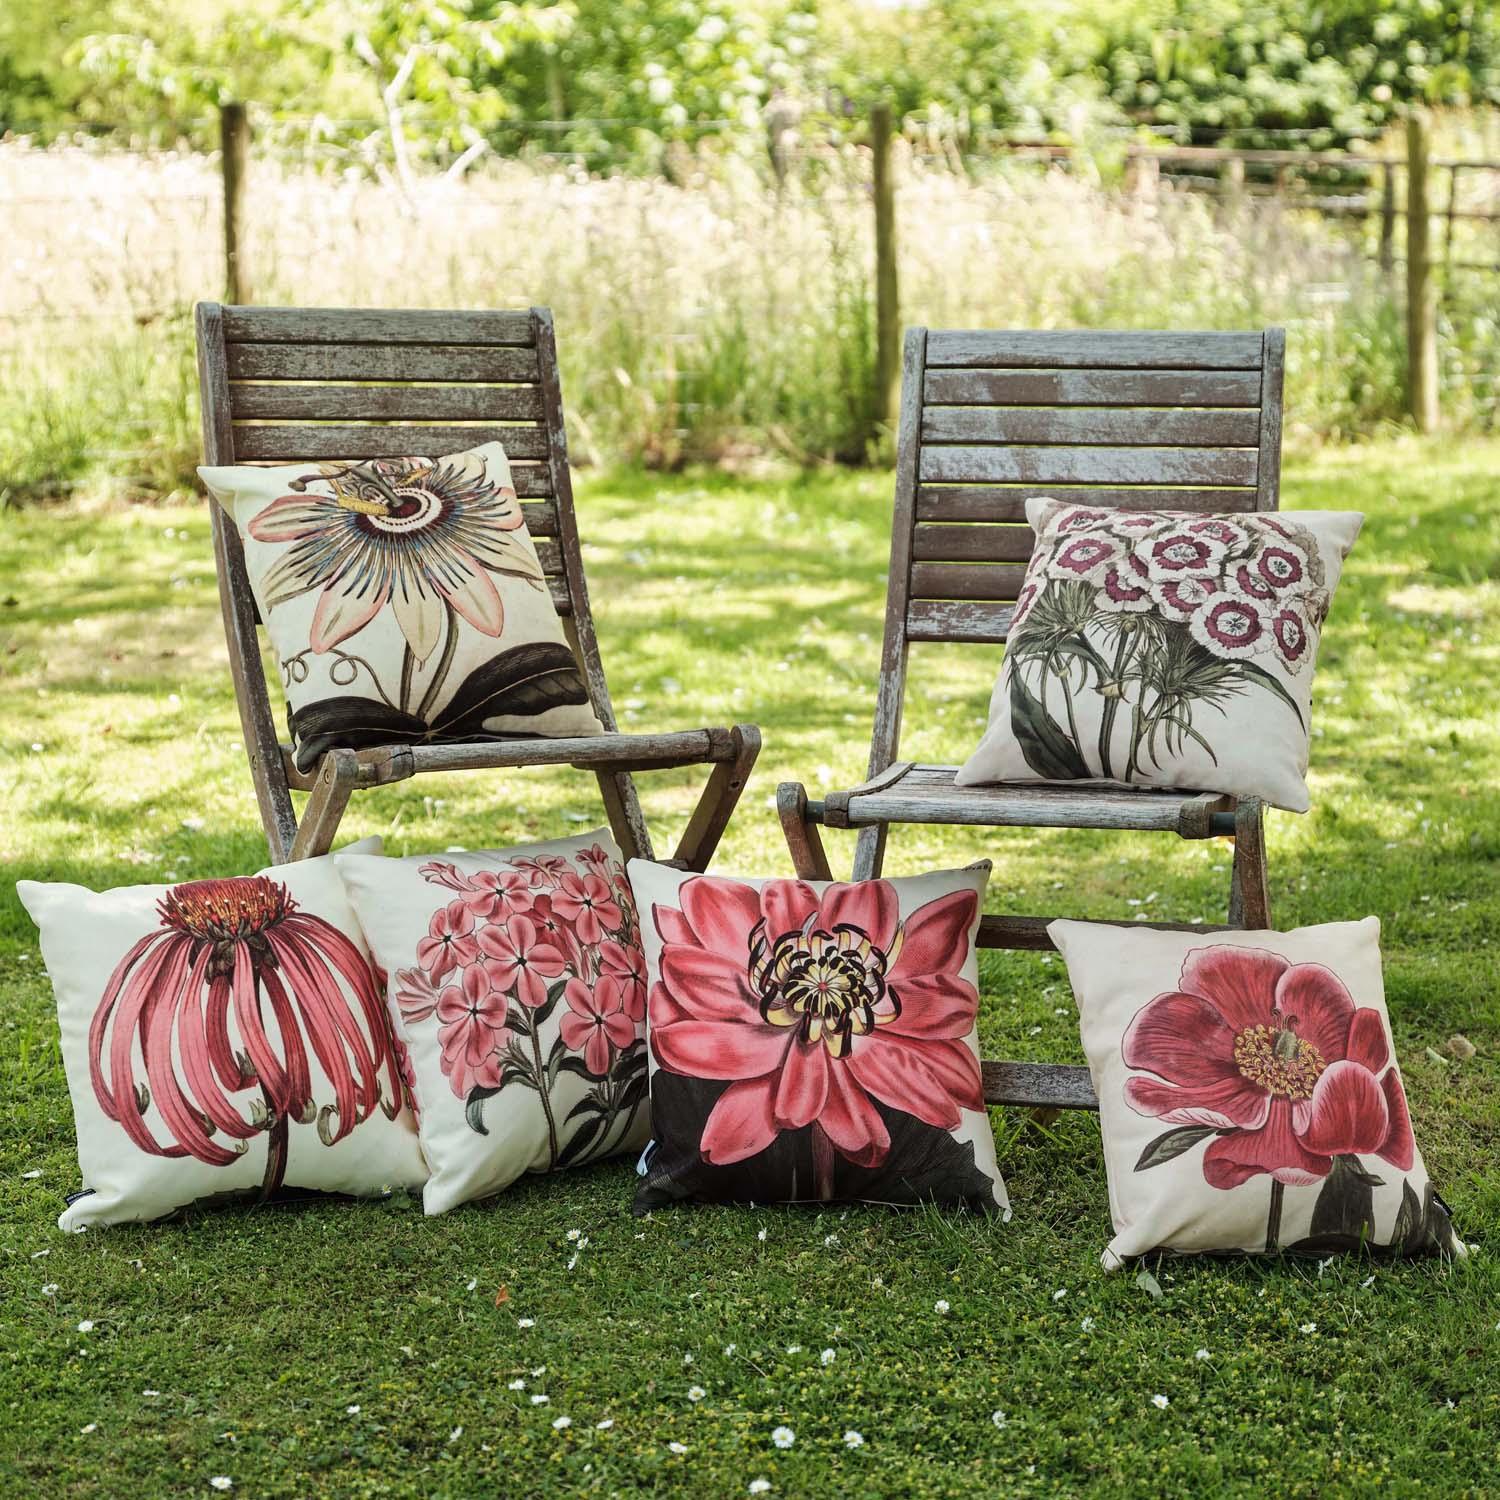 Gladious - Botanical Outdoor Cushion - Handmade Cushions UK - WeLoveCushions